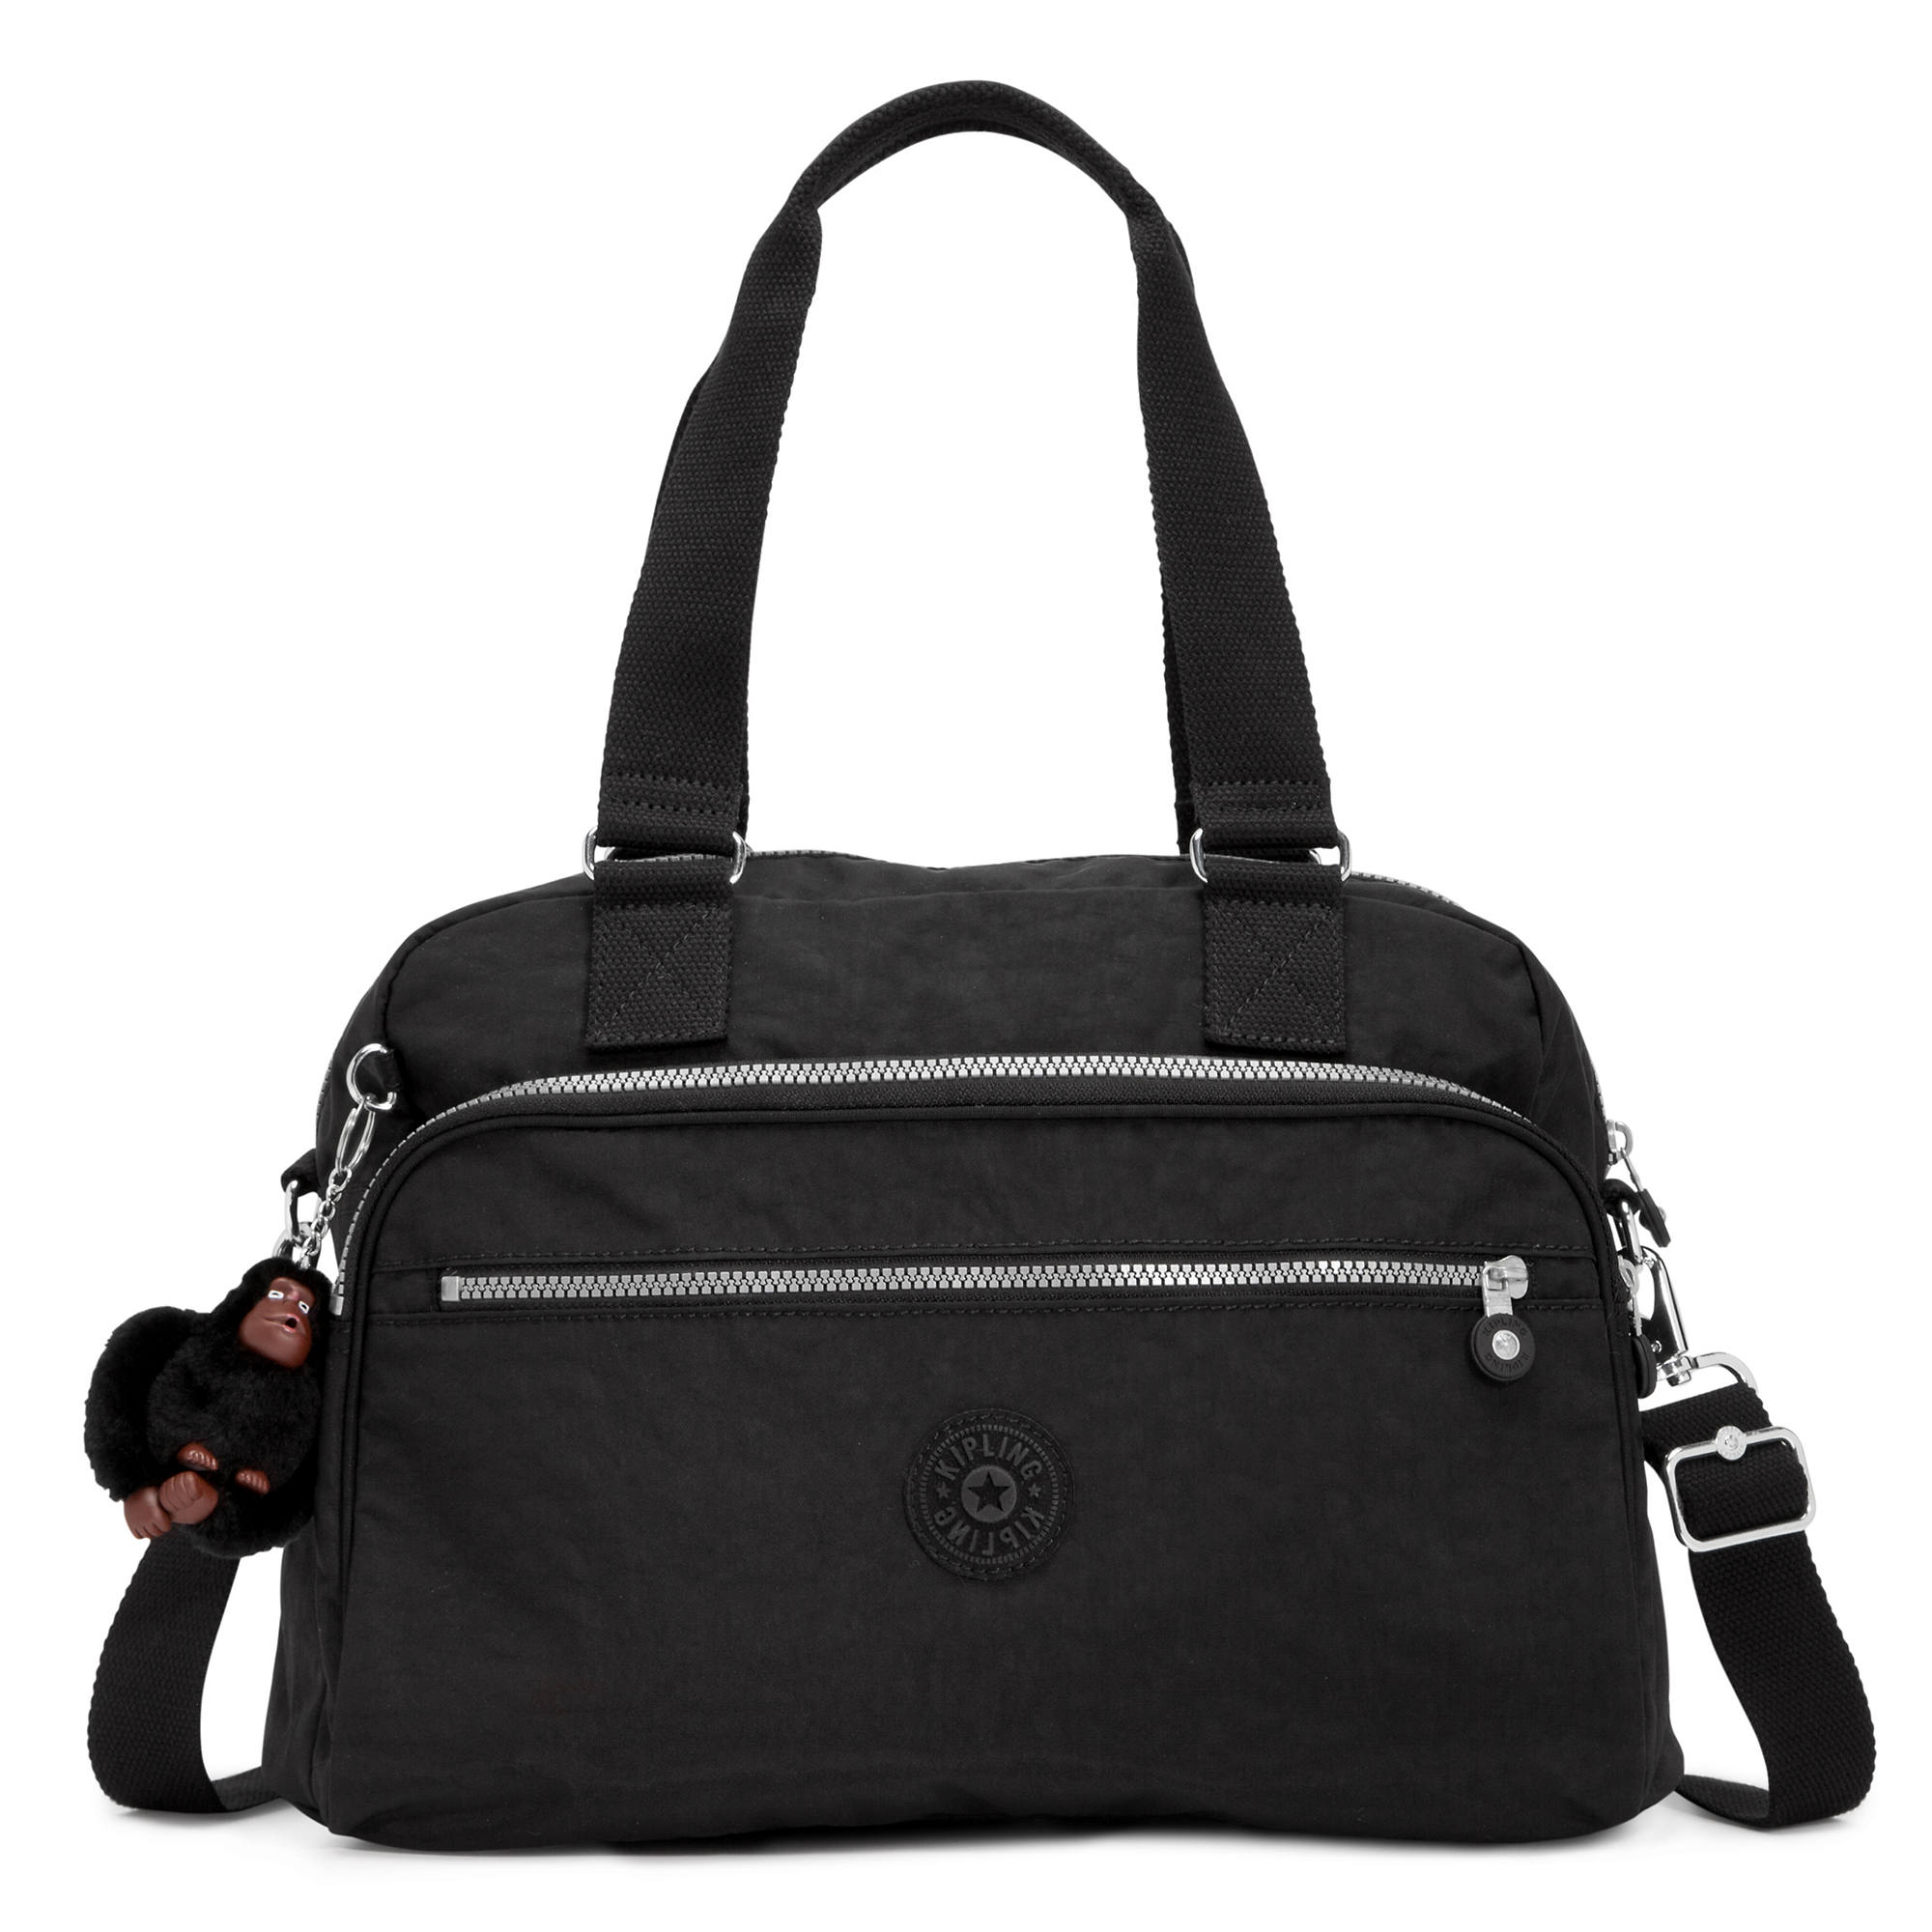 Kipling New Weekend Travel Bag | eBay